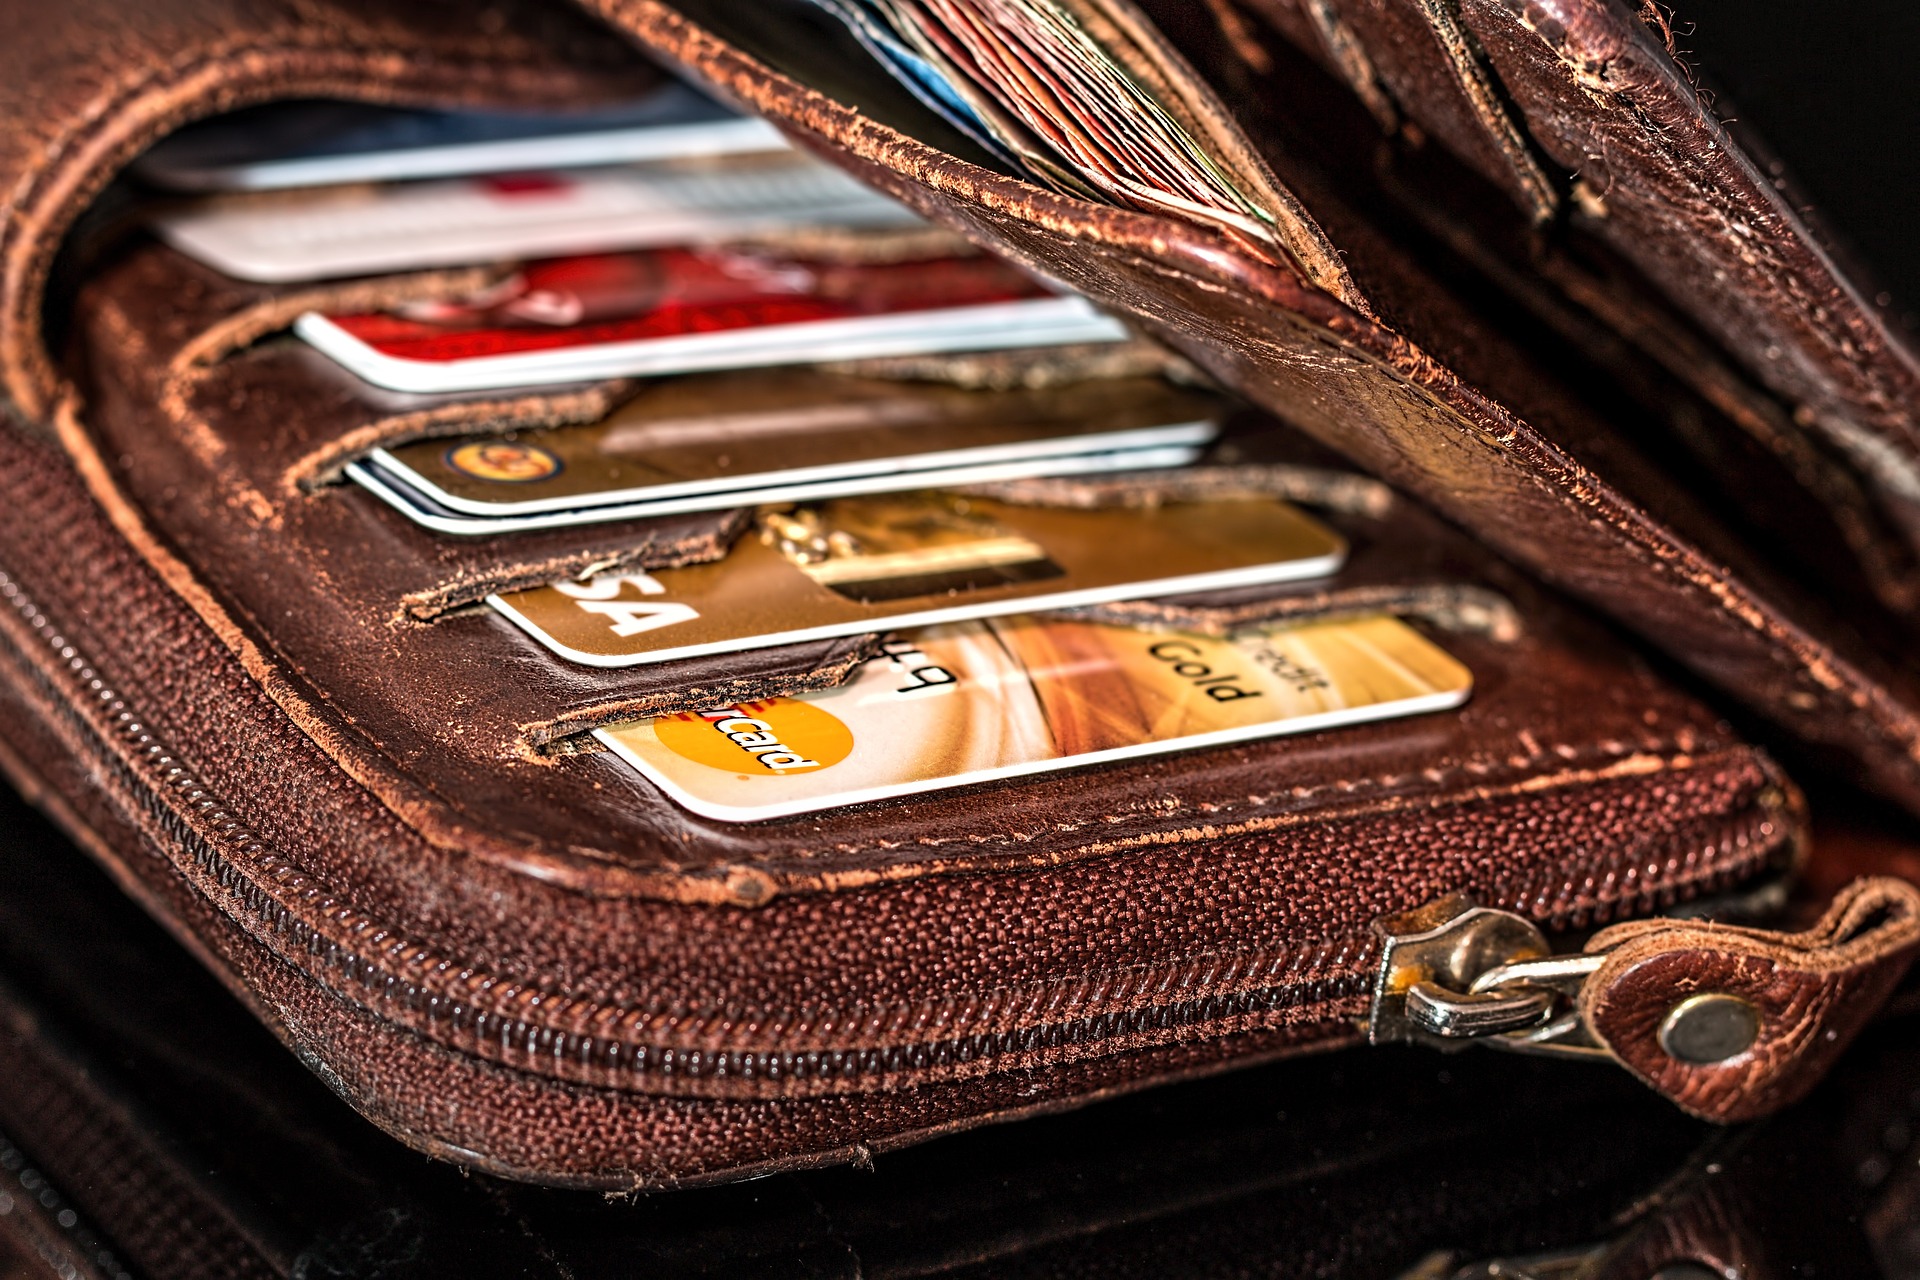 Na obrázku je otevřená peněženka s několika platebními kartami